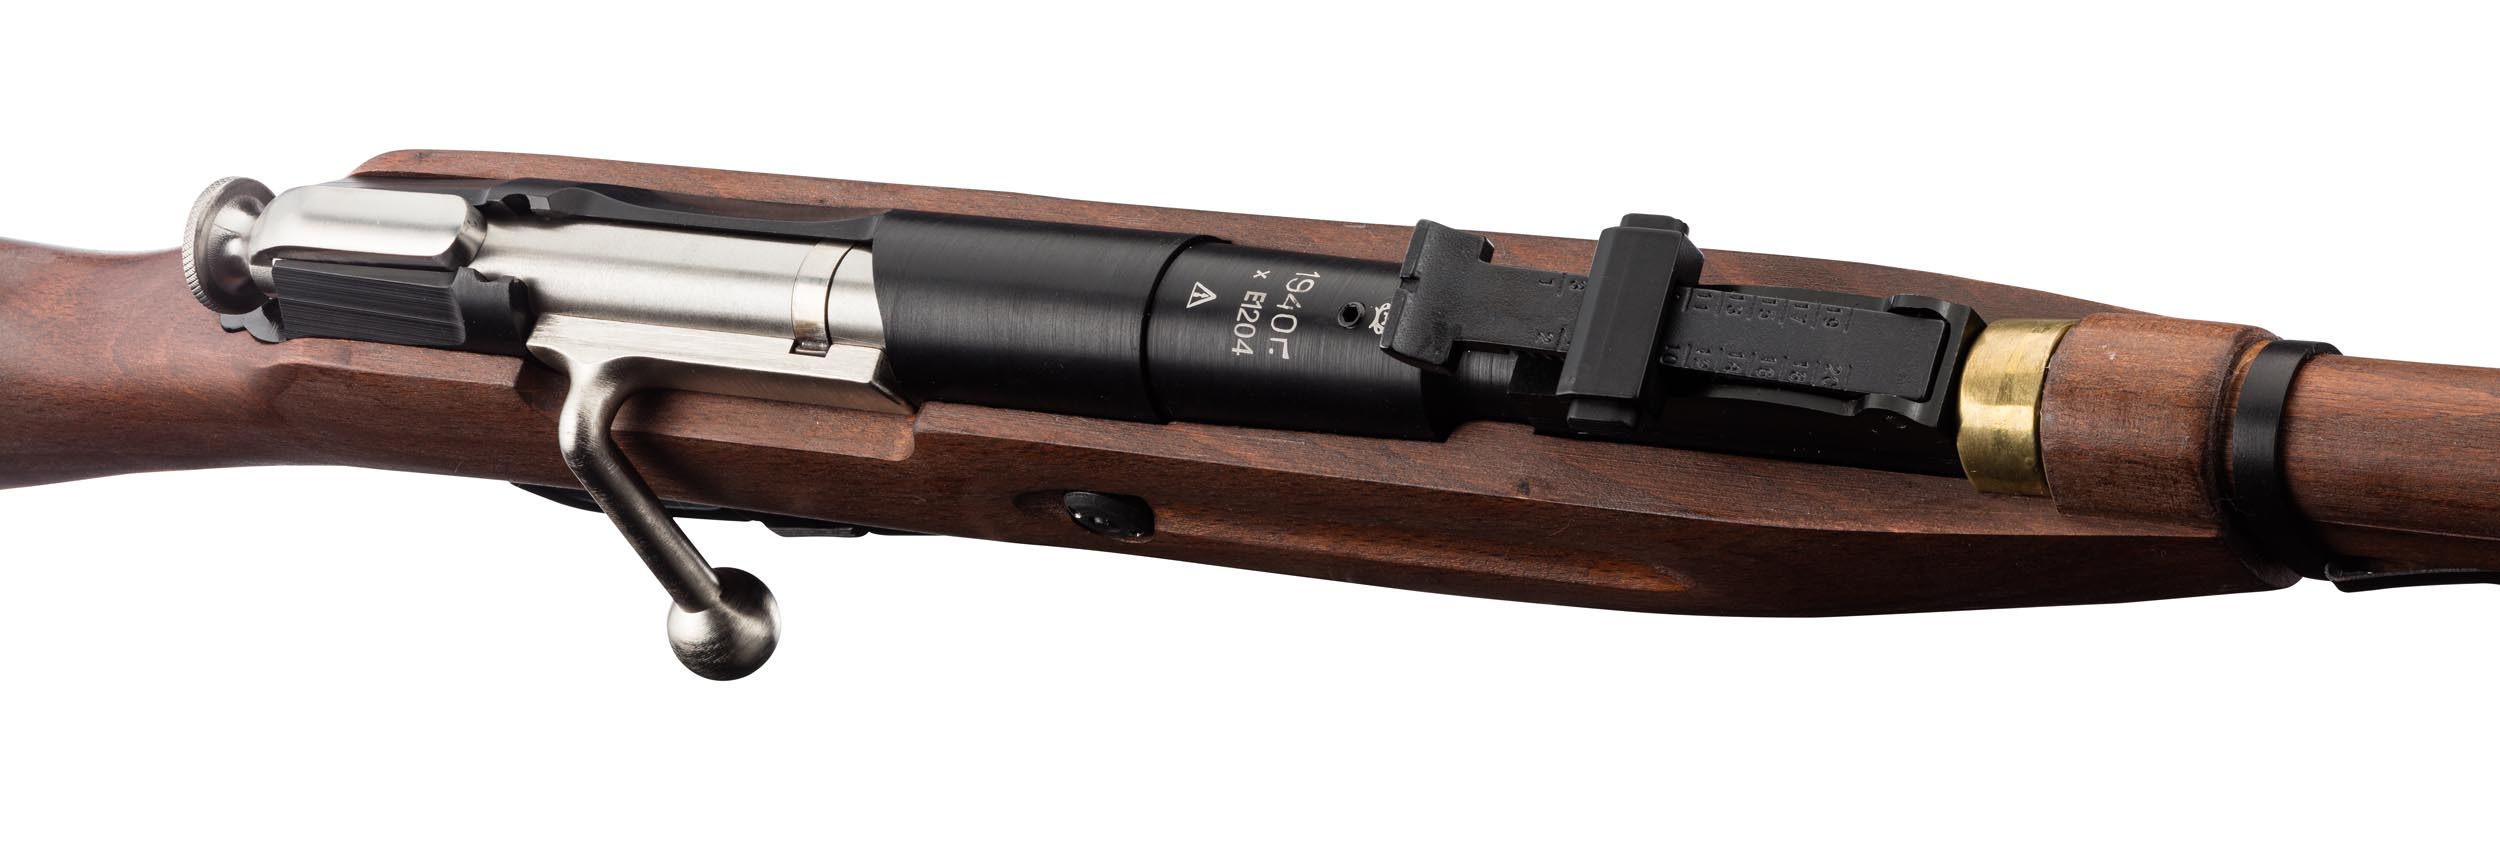 Photo Réplique airsoft Bolt fusil Mosin-Nagant 1891/30 à ressort metal et bois 1,5J